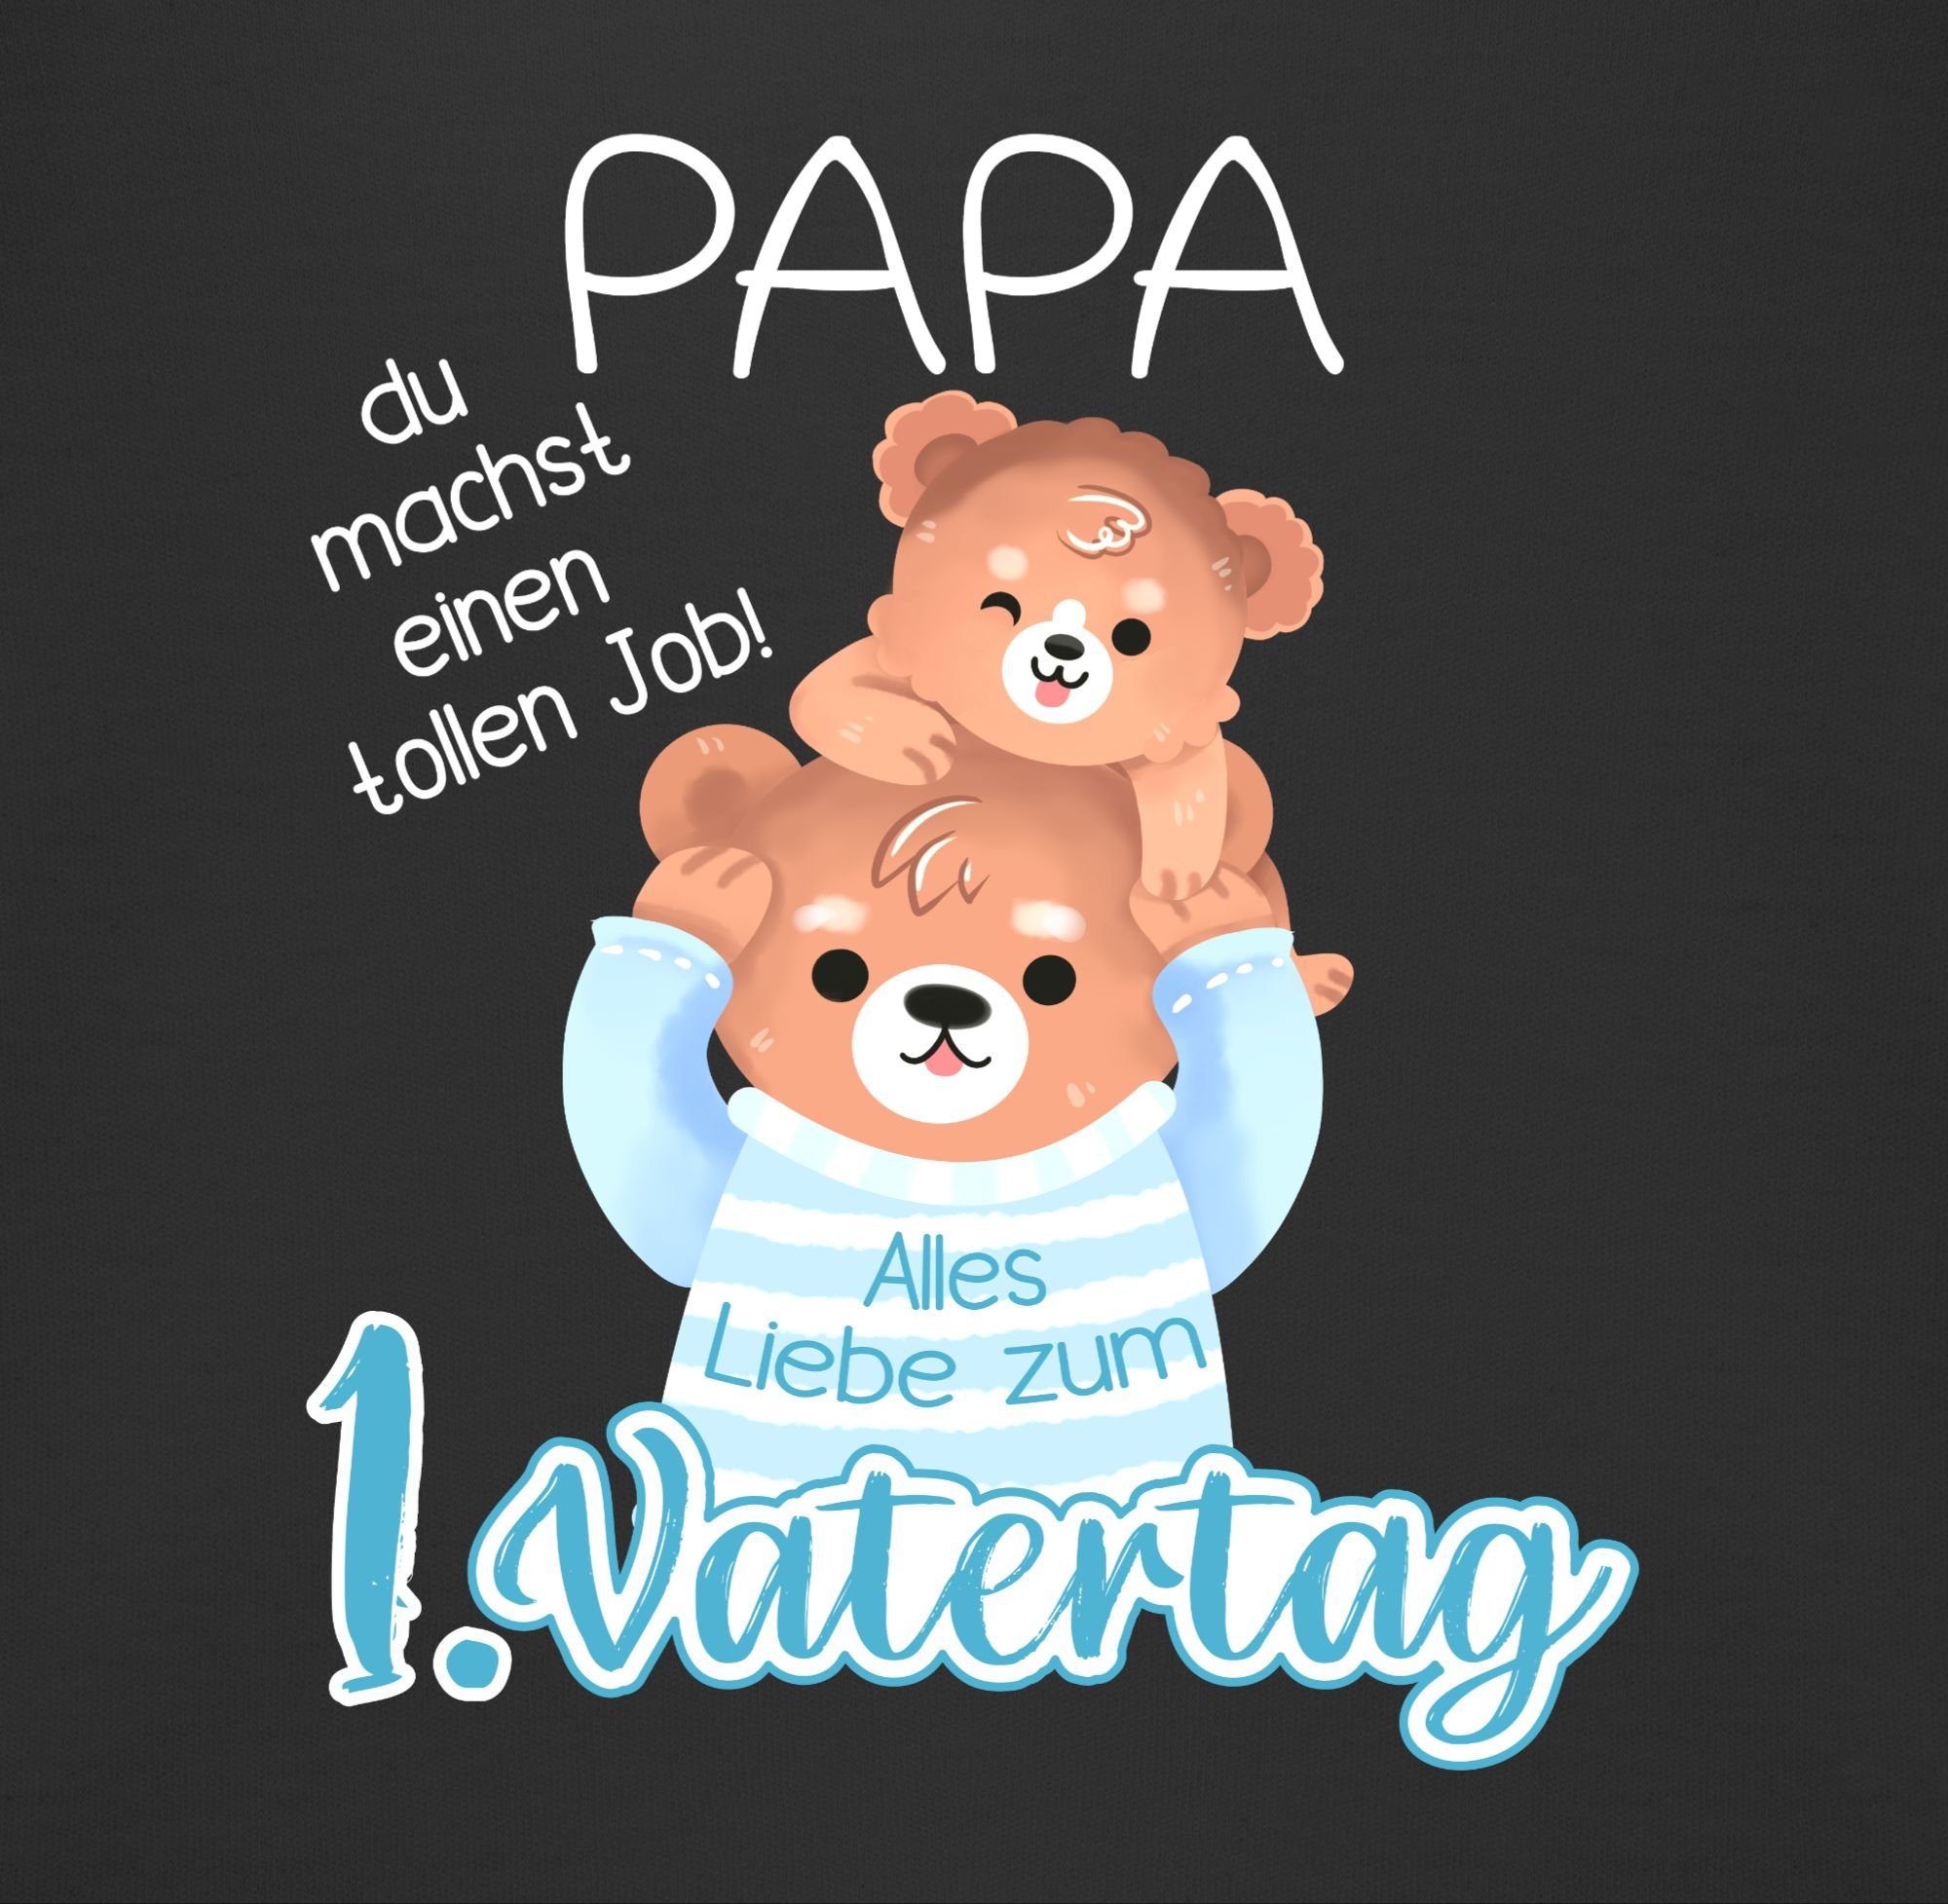 1. Schwarz Baby Alles Bär, Geschenk Vatertag zum Lätzchen - Baby und Liebe Shirtracer Vatertag Papa 3 Bär